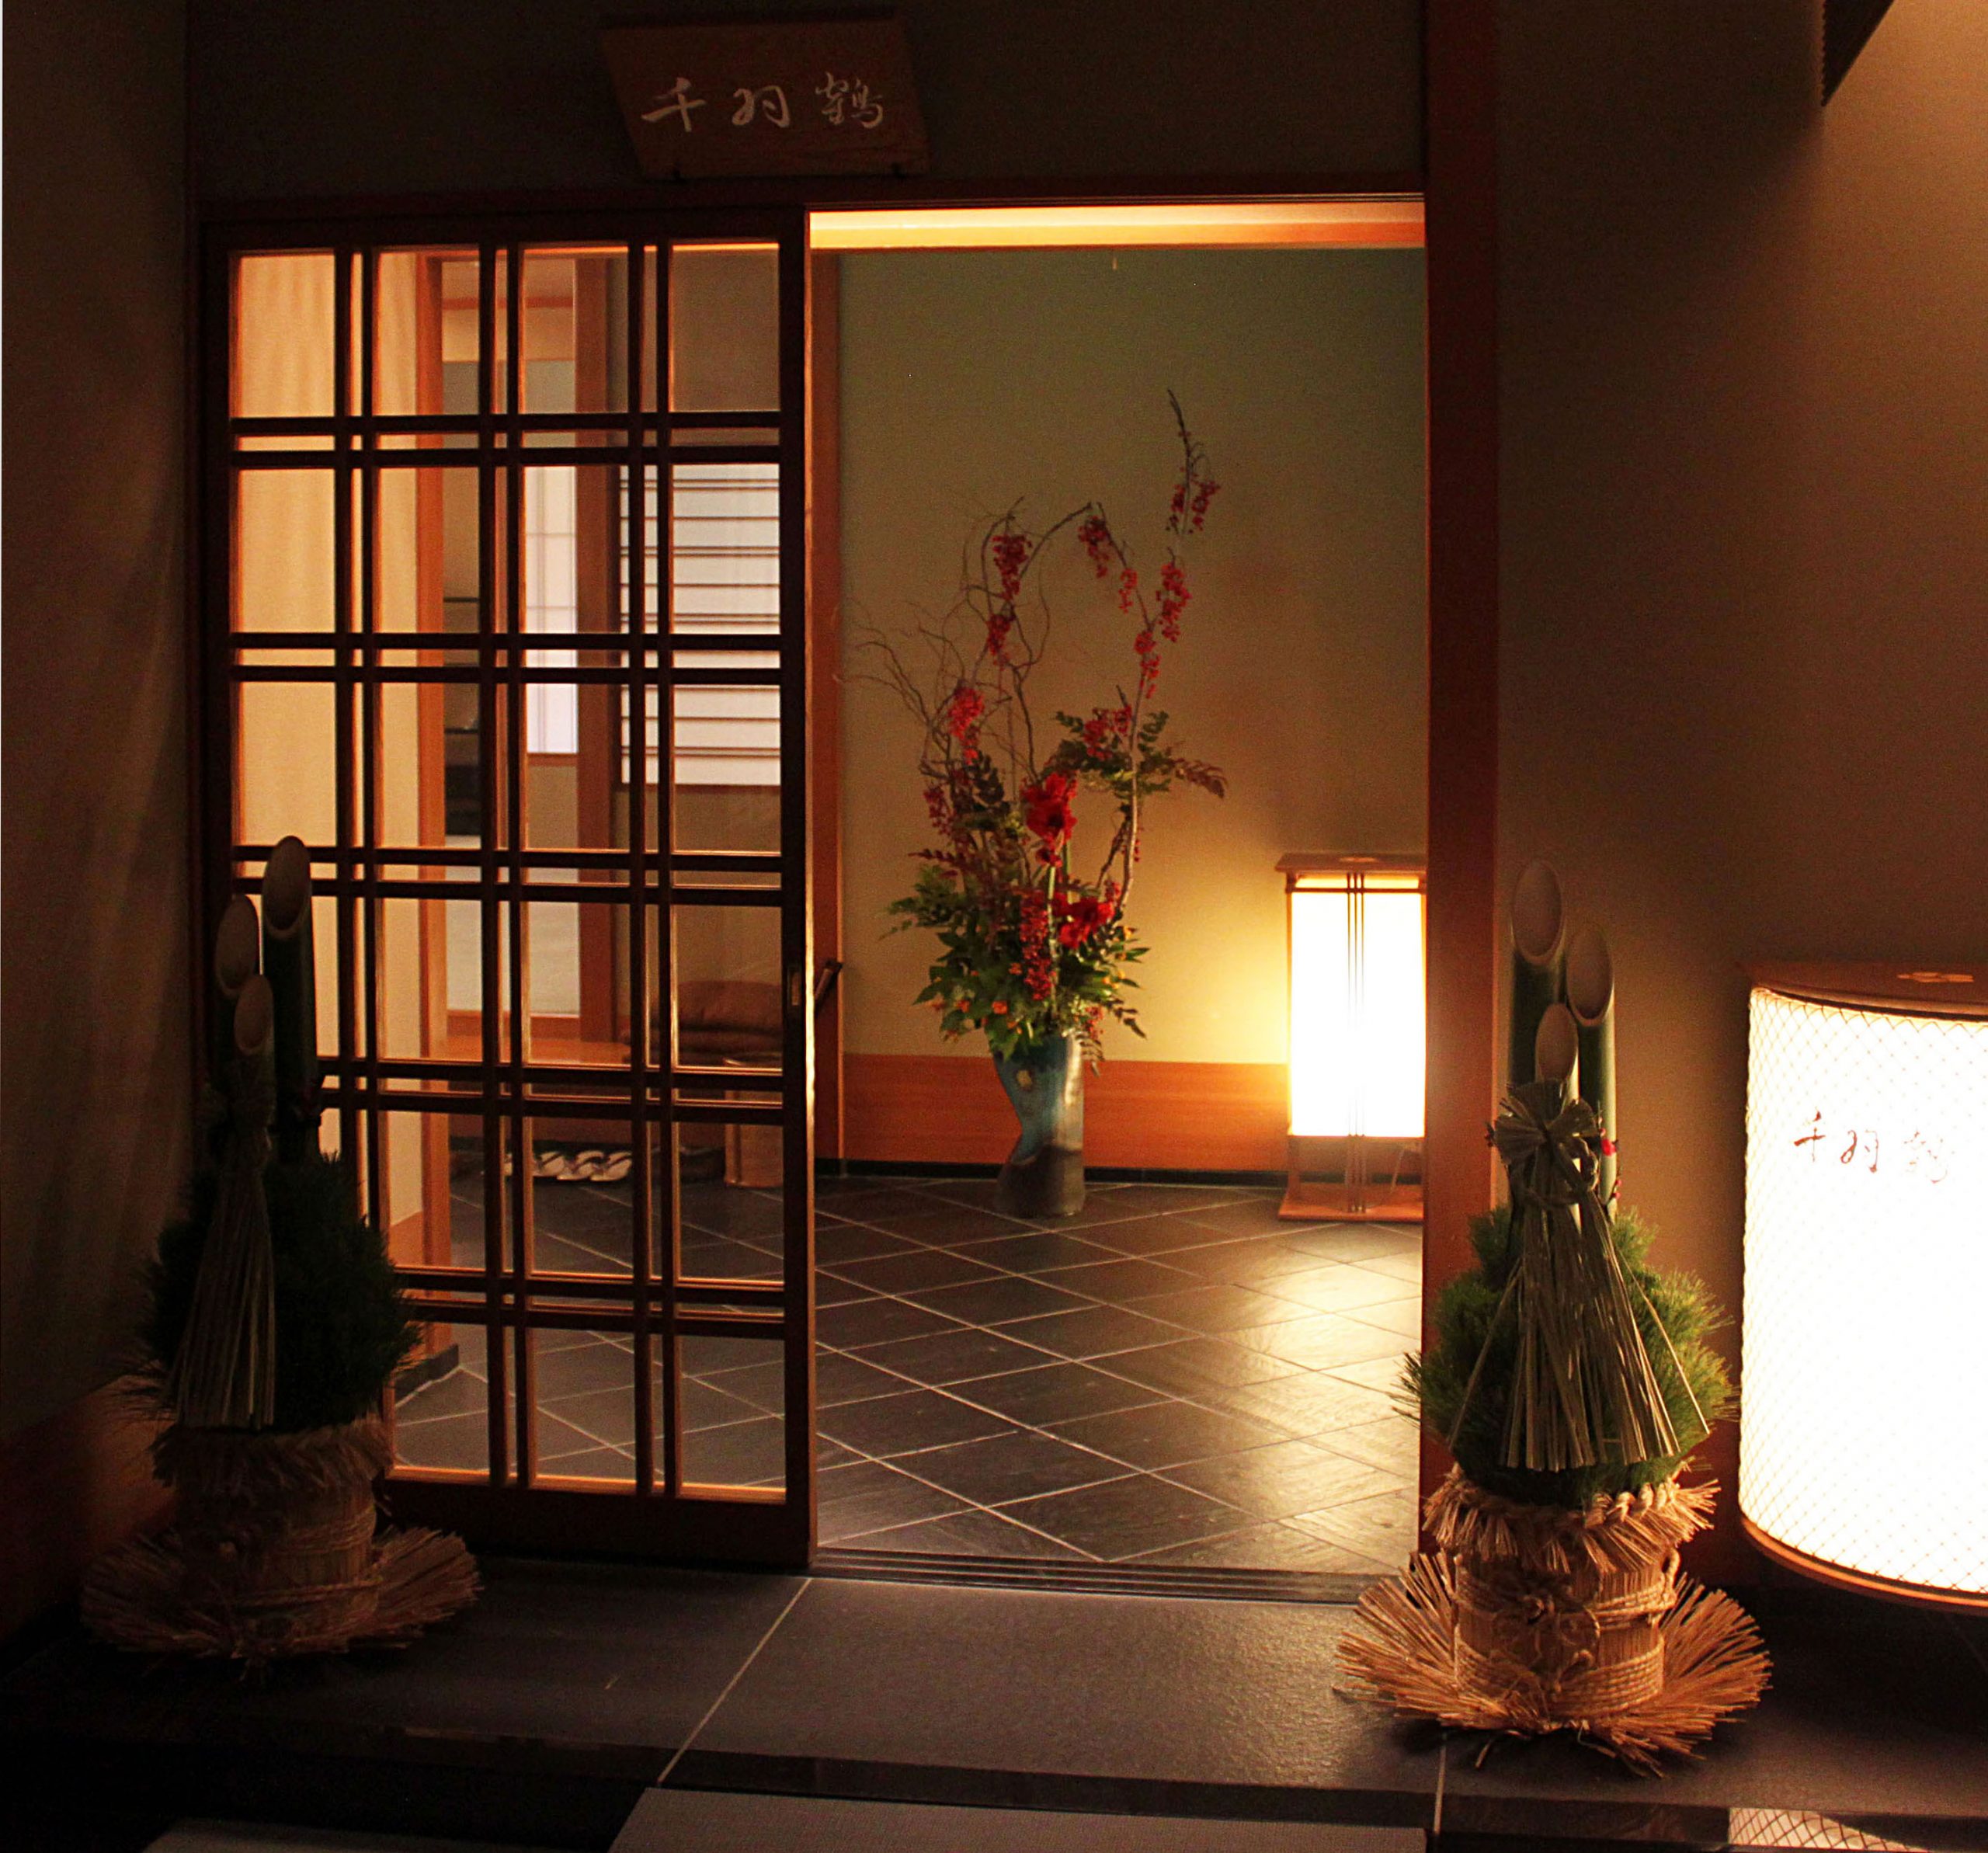 2014   料亭「千羽鶴」ホテルニューオータニ（東京）<br>
At the Senbazuru restaurant, Hotel New Otani, Tokyo